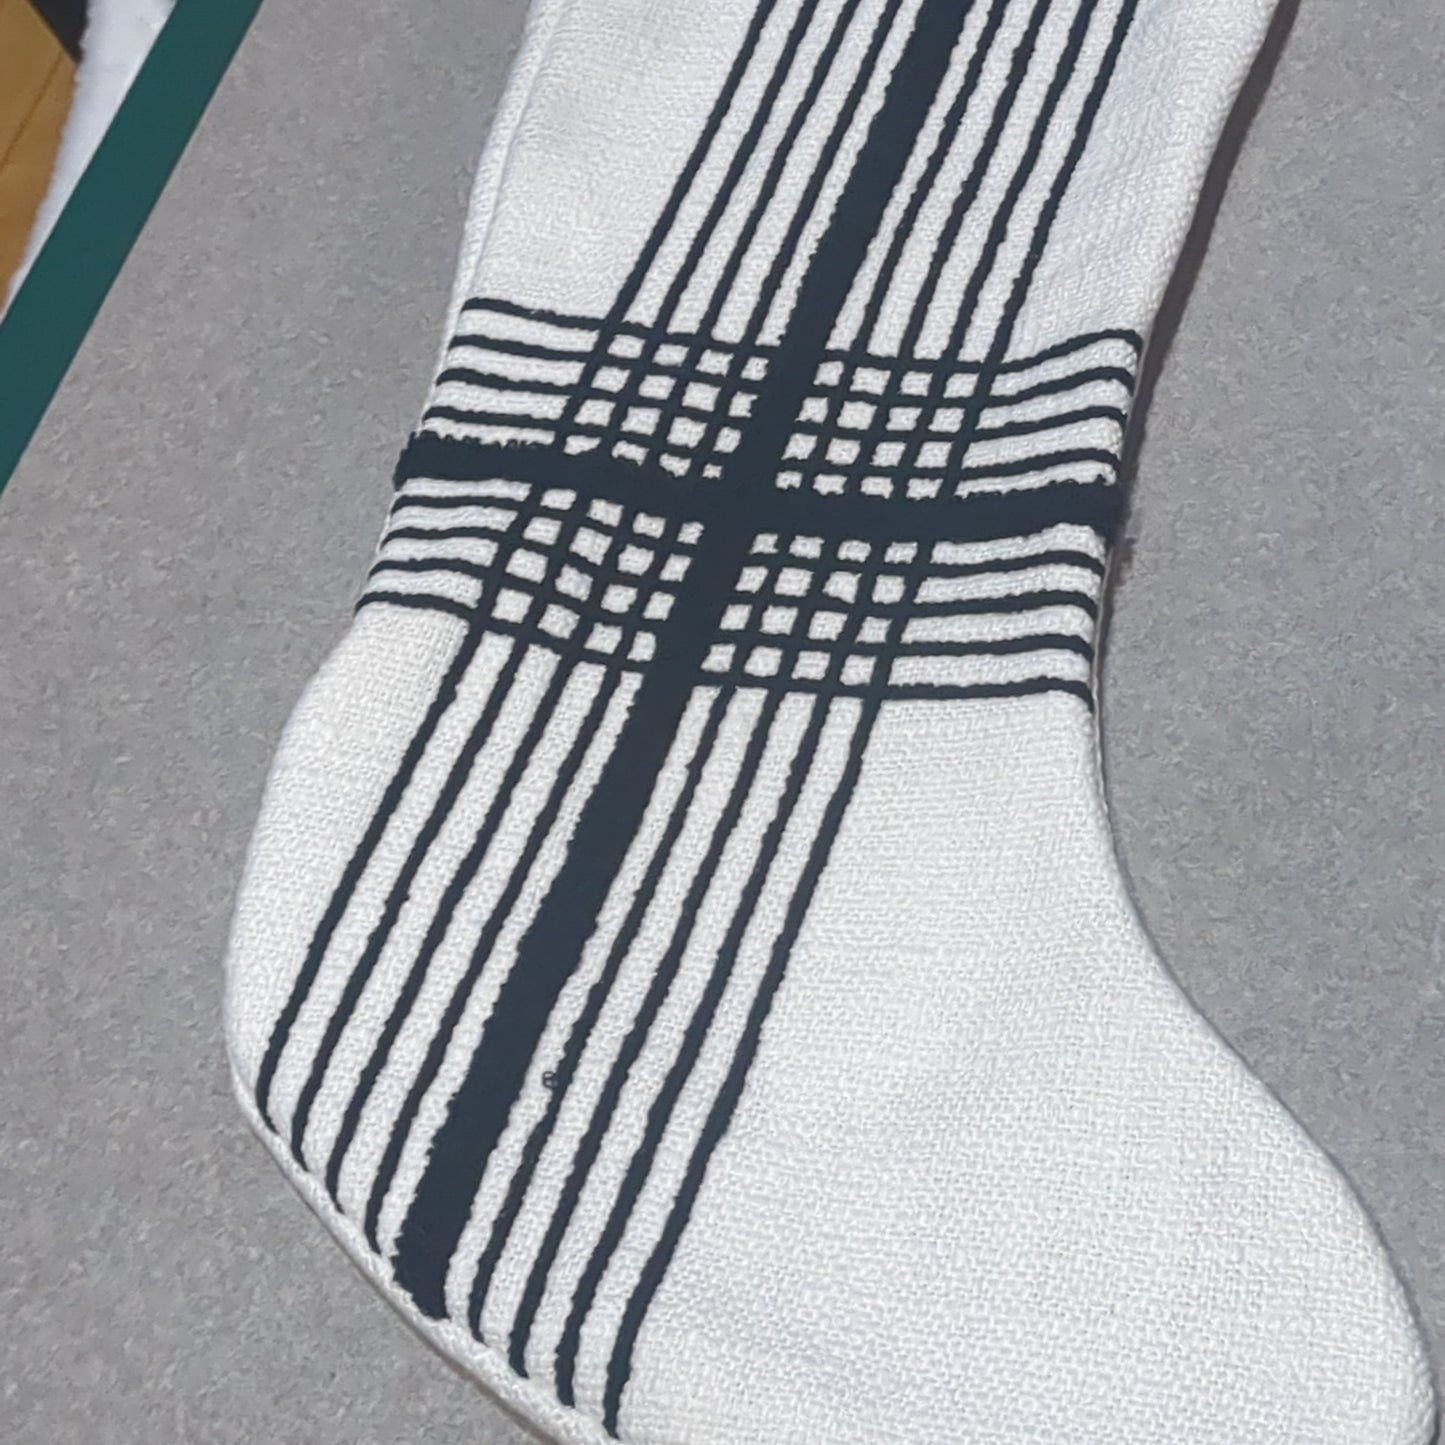 Stocking white with black stripes.